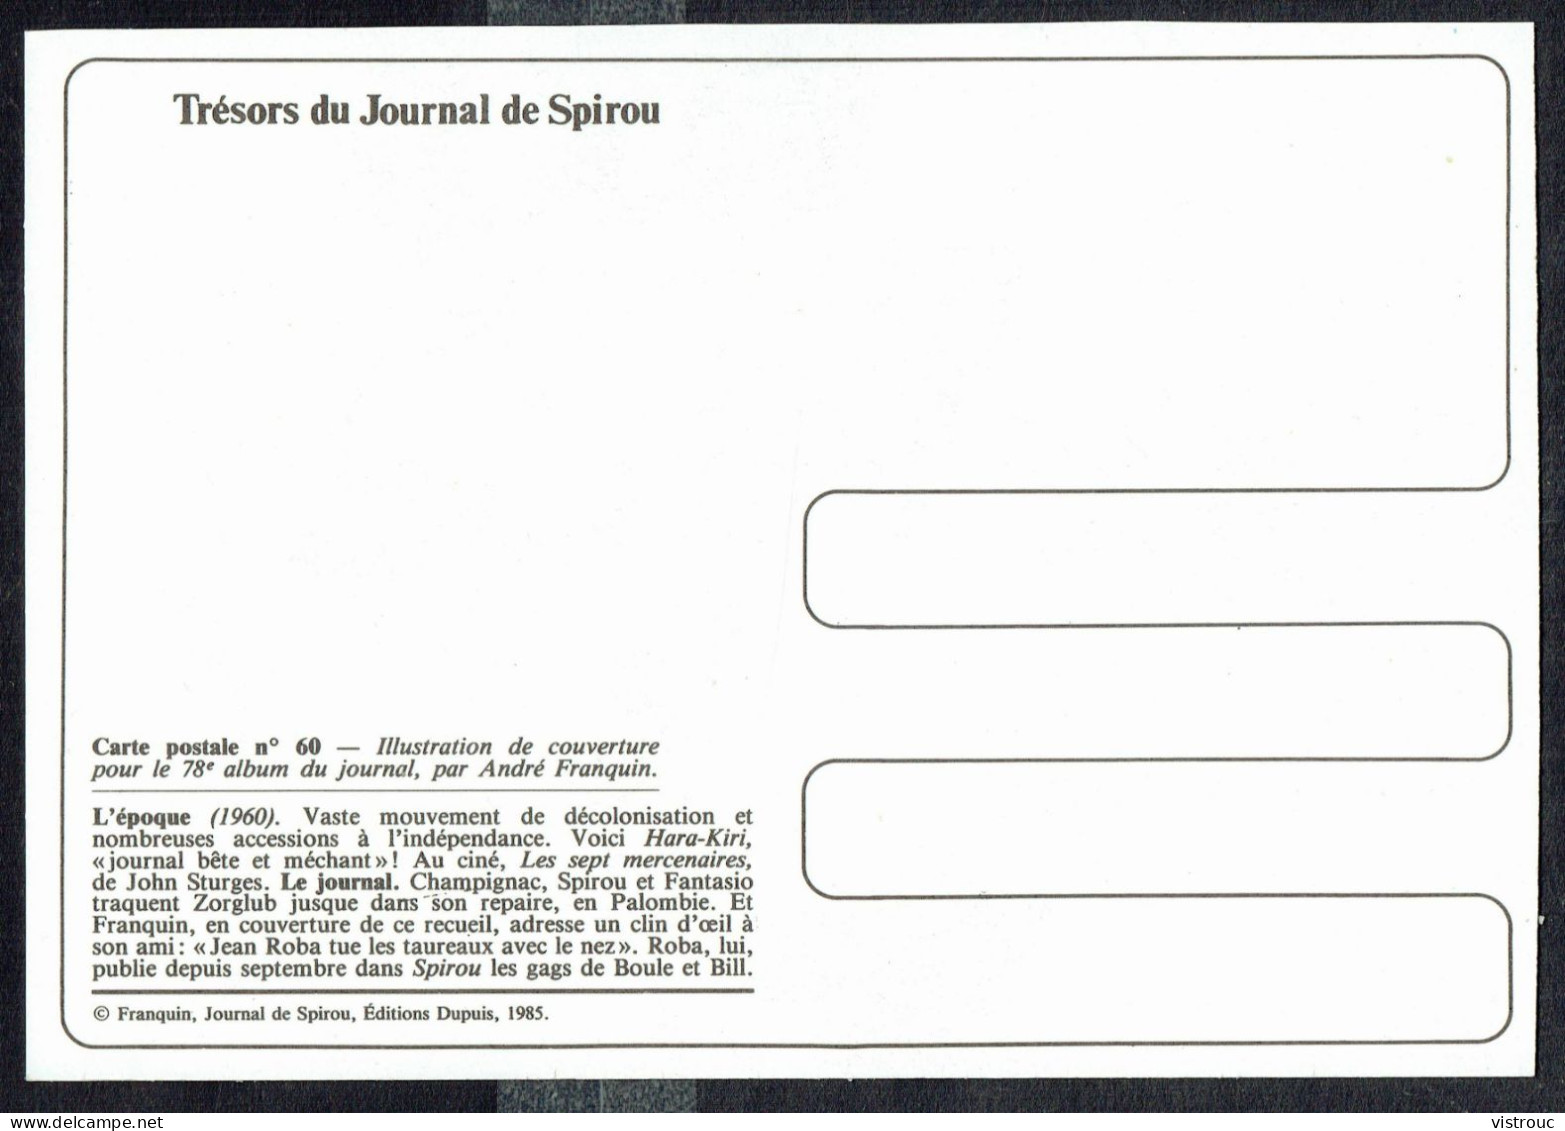 SPIROU - CP N° 60 : Illustration Couverture Album N° 78 De FRANQUIN - Non Circulé - Not Circulated - Ed. DUPUIS - 1985. - Comicfiguren